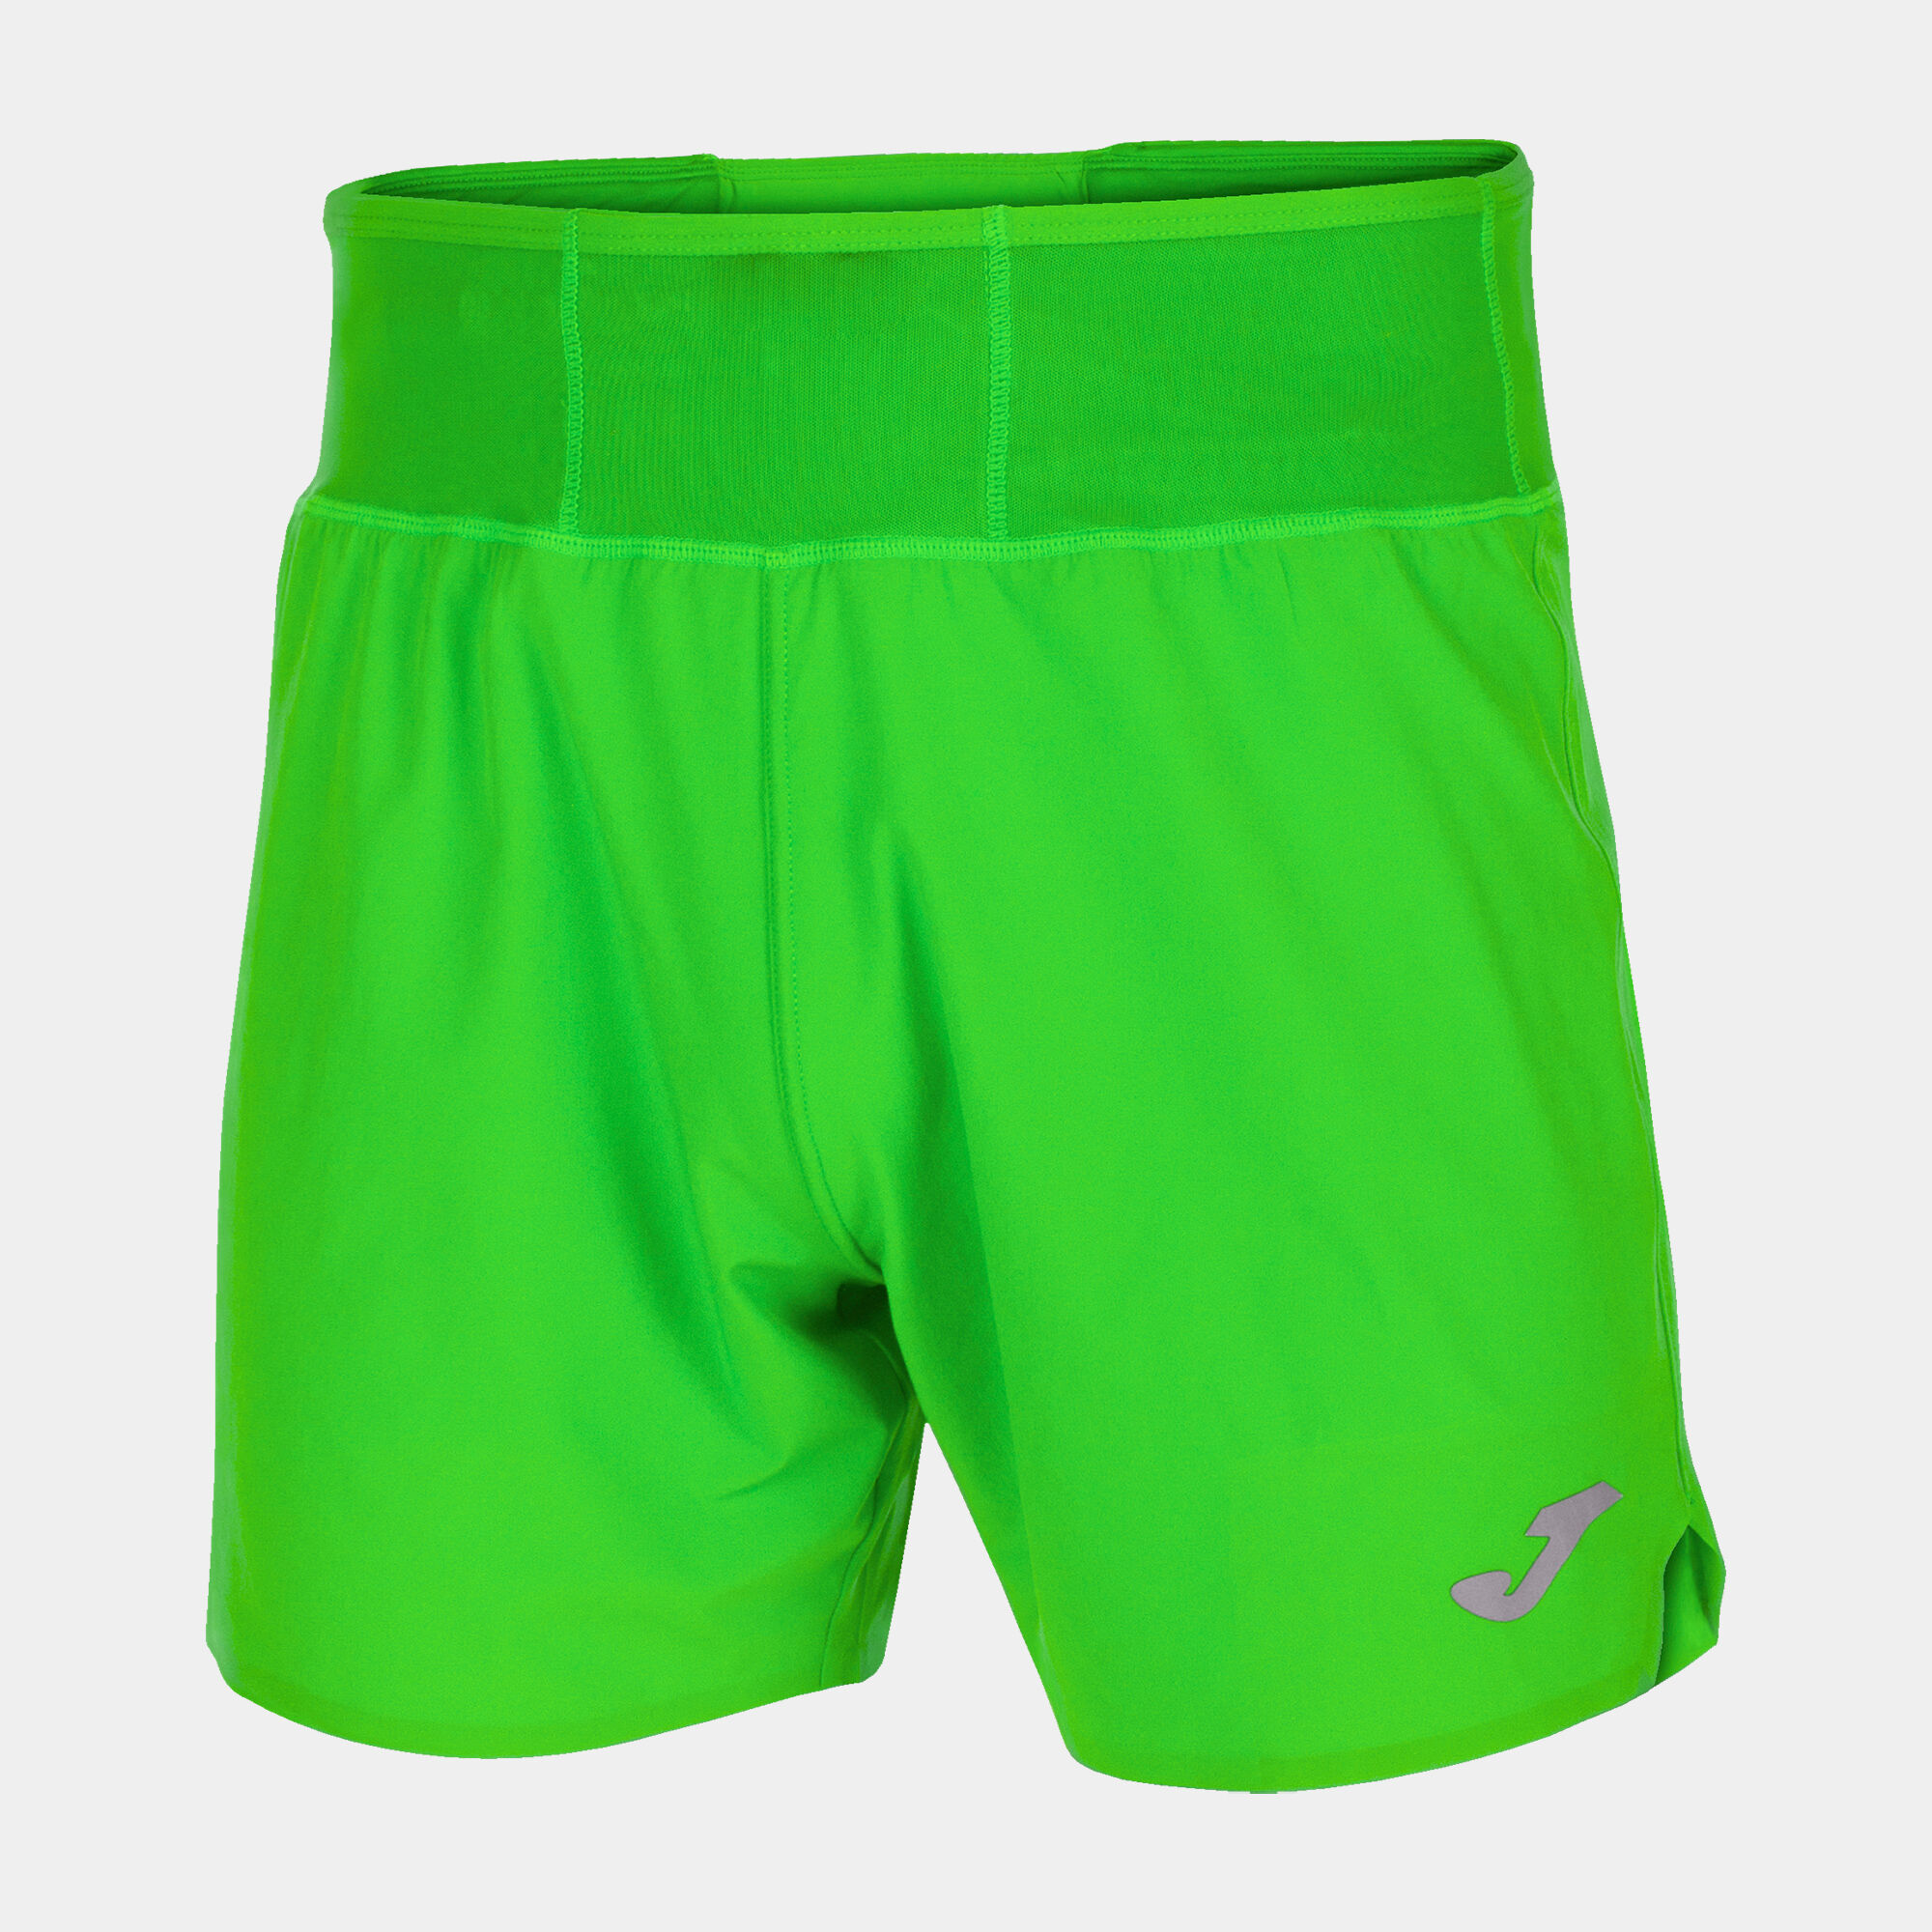 Shorts man R-Combi fluorescent green